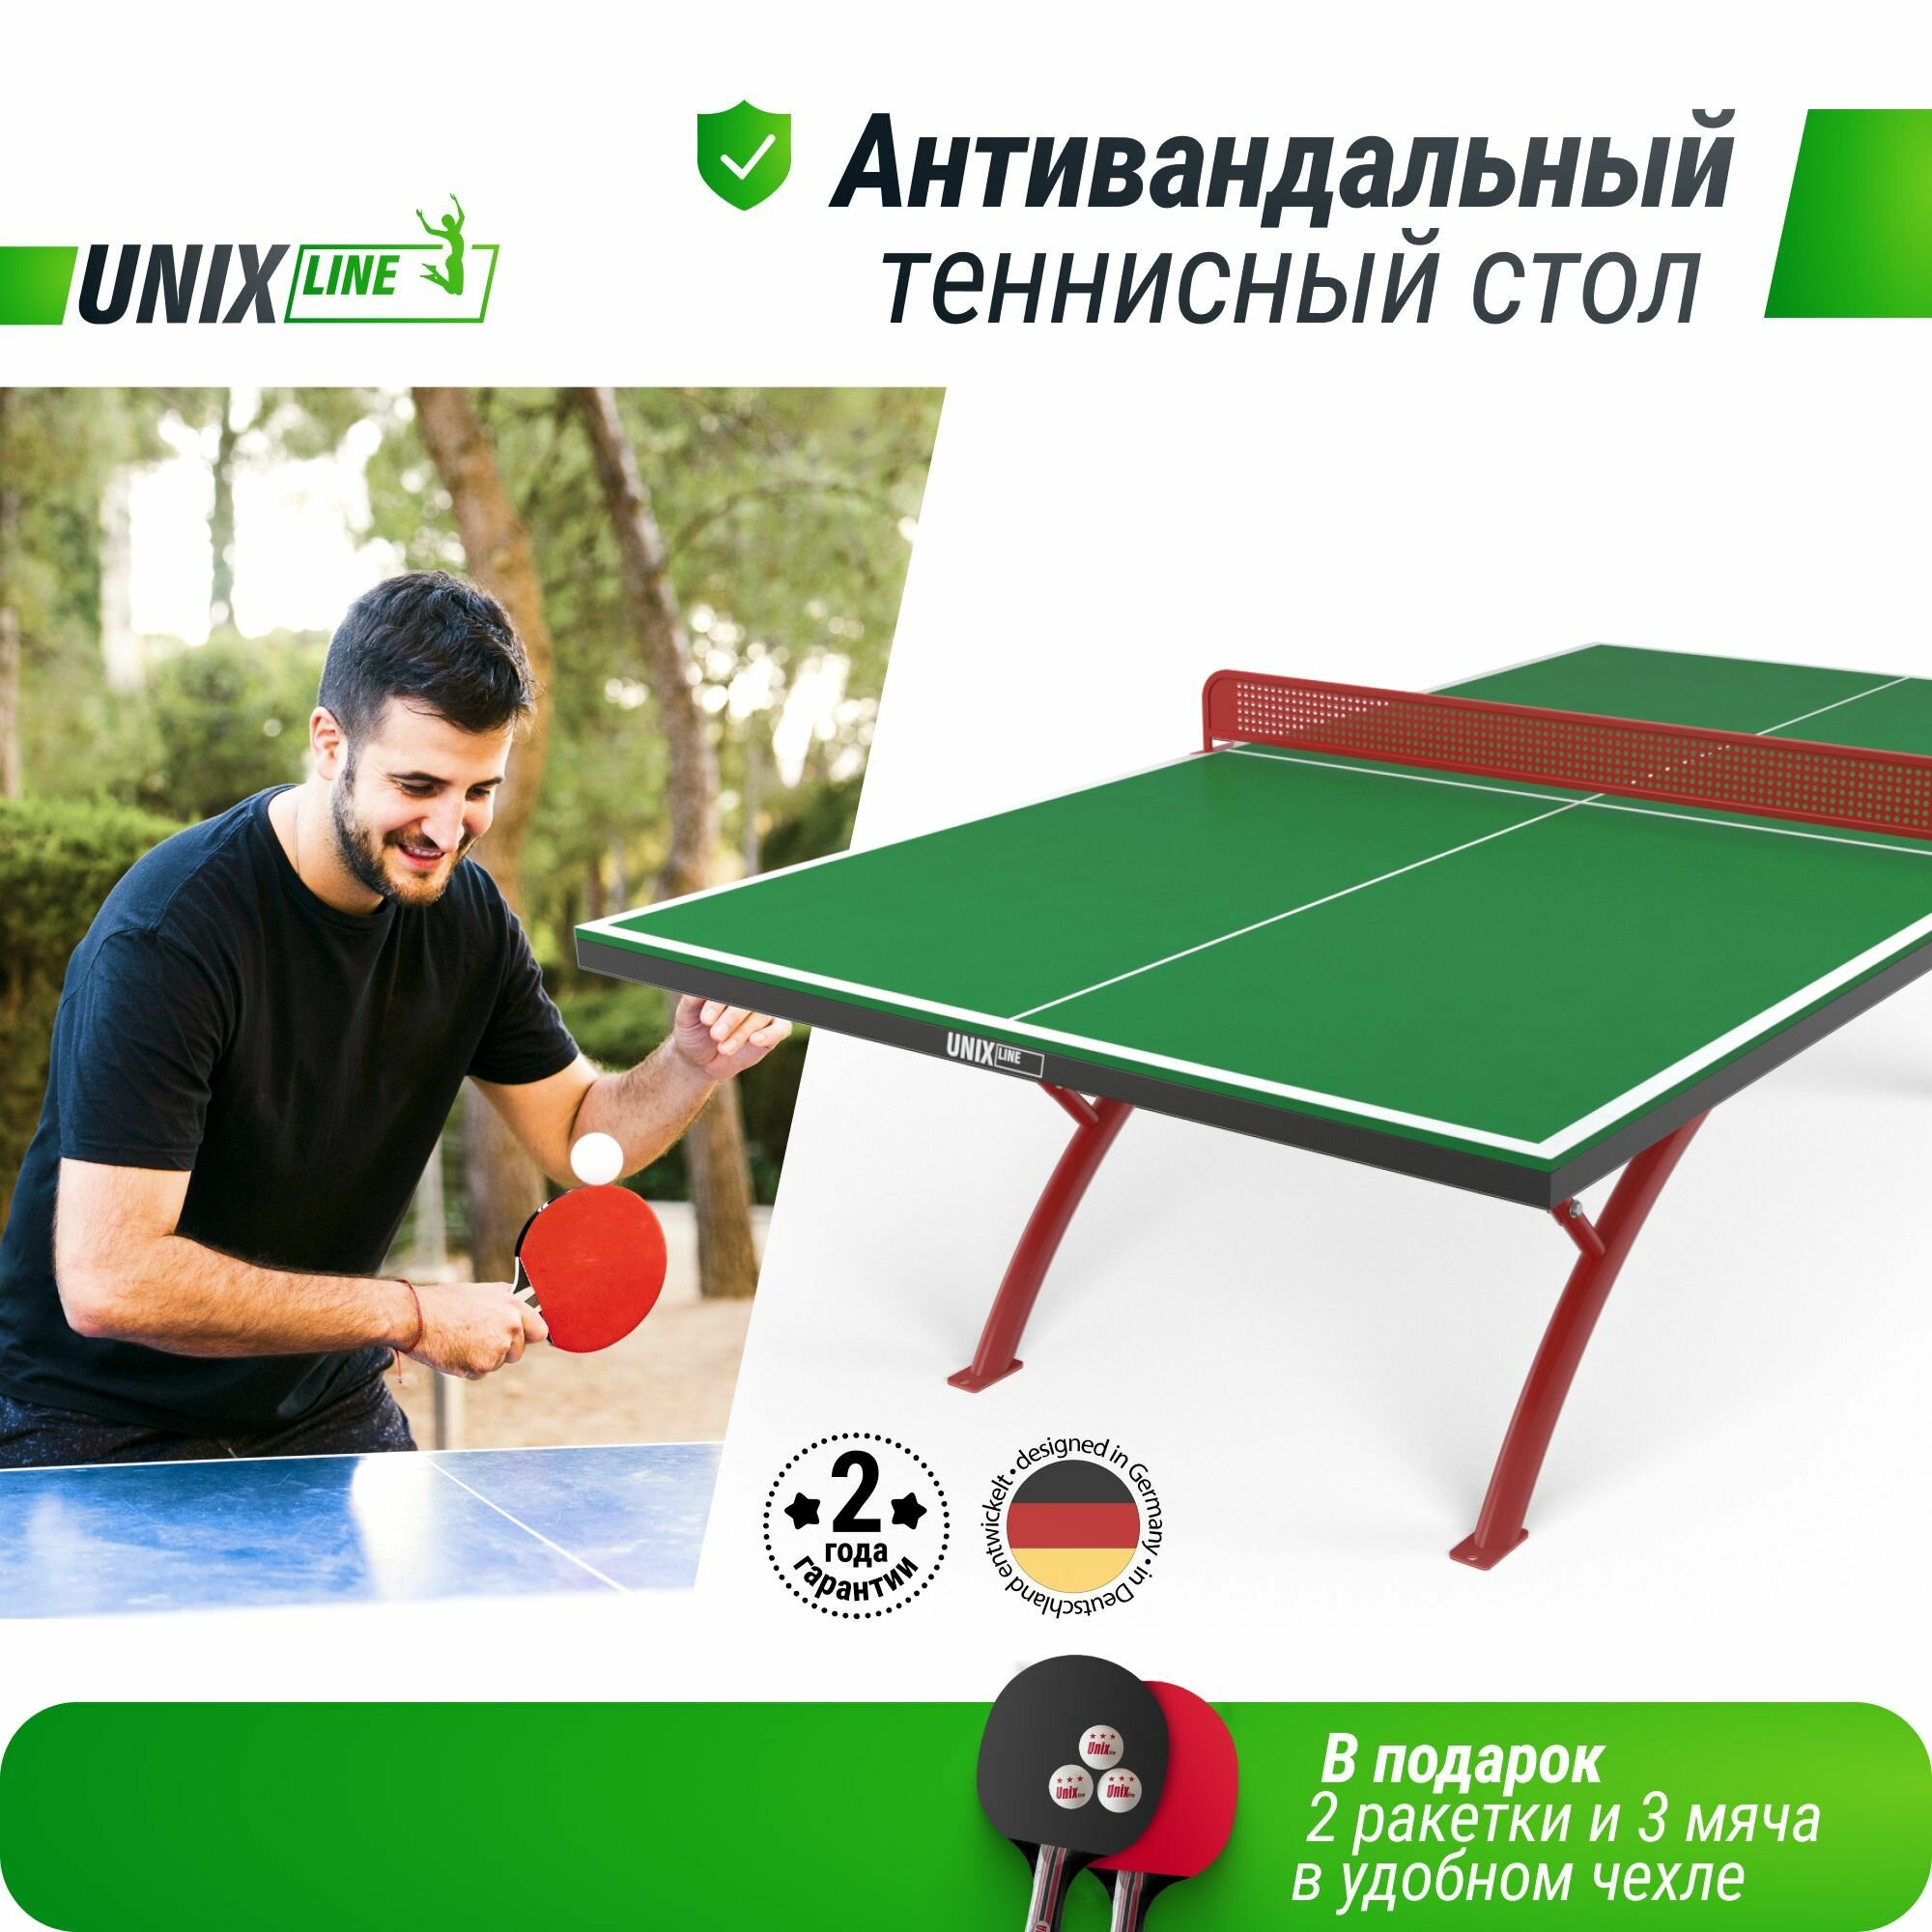 Антивандальный теннисный стол для игры в настольный теннис UNIX Line 14 mm SMC зеленый (Green/Red), антибликовое покрытие, в комплекте сетка, 2 ракетки, 3 мяча UNIXLINE